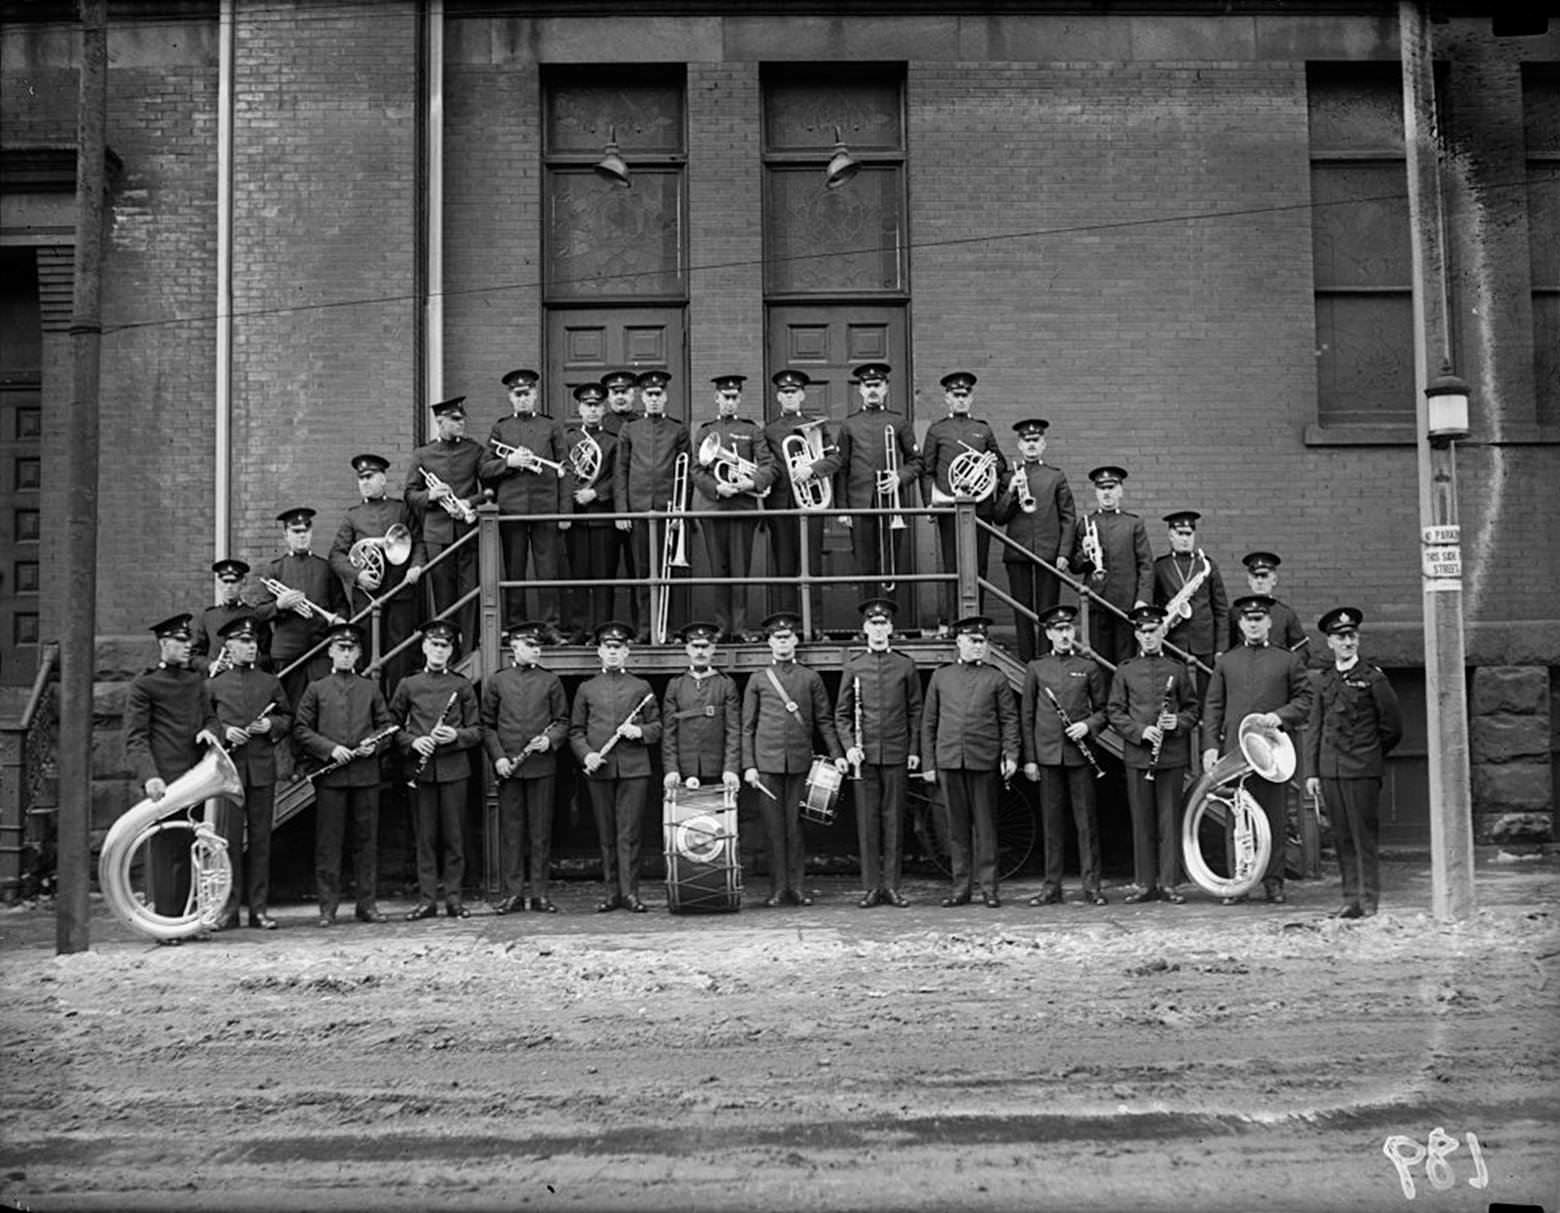 Toronto Police Band outside Massey Hall, Feb. 2, 1923.